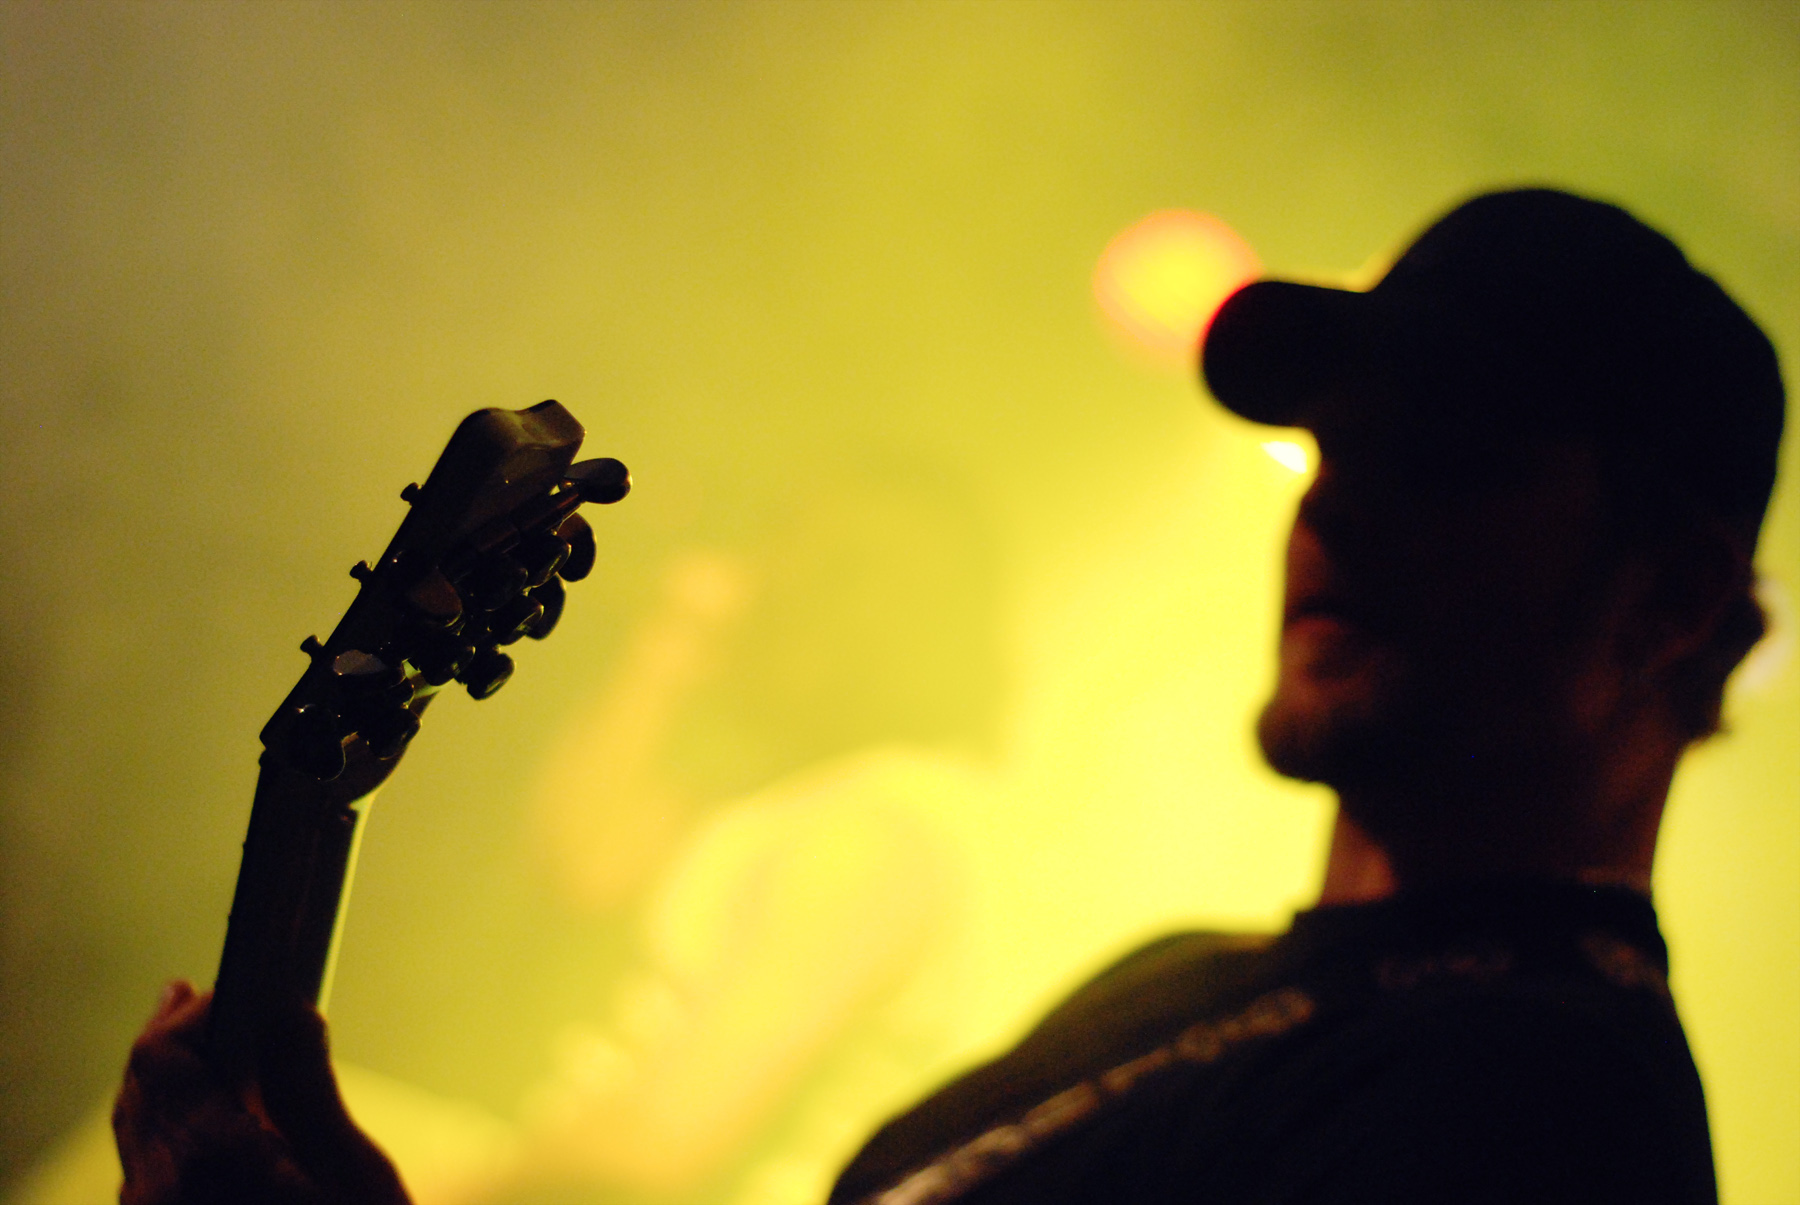 a man holding a guitar at a concert